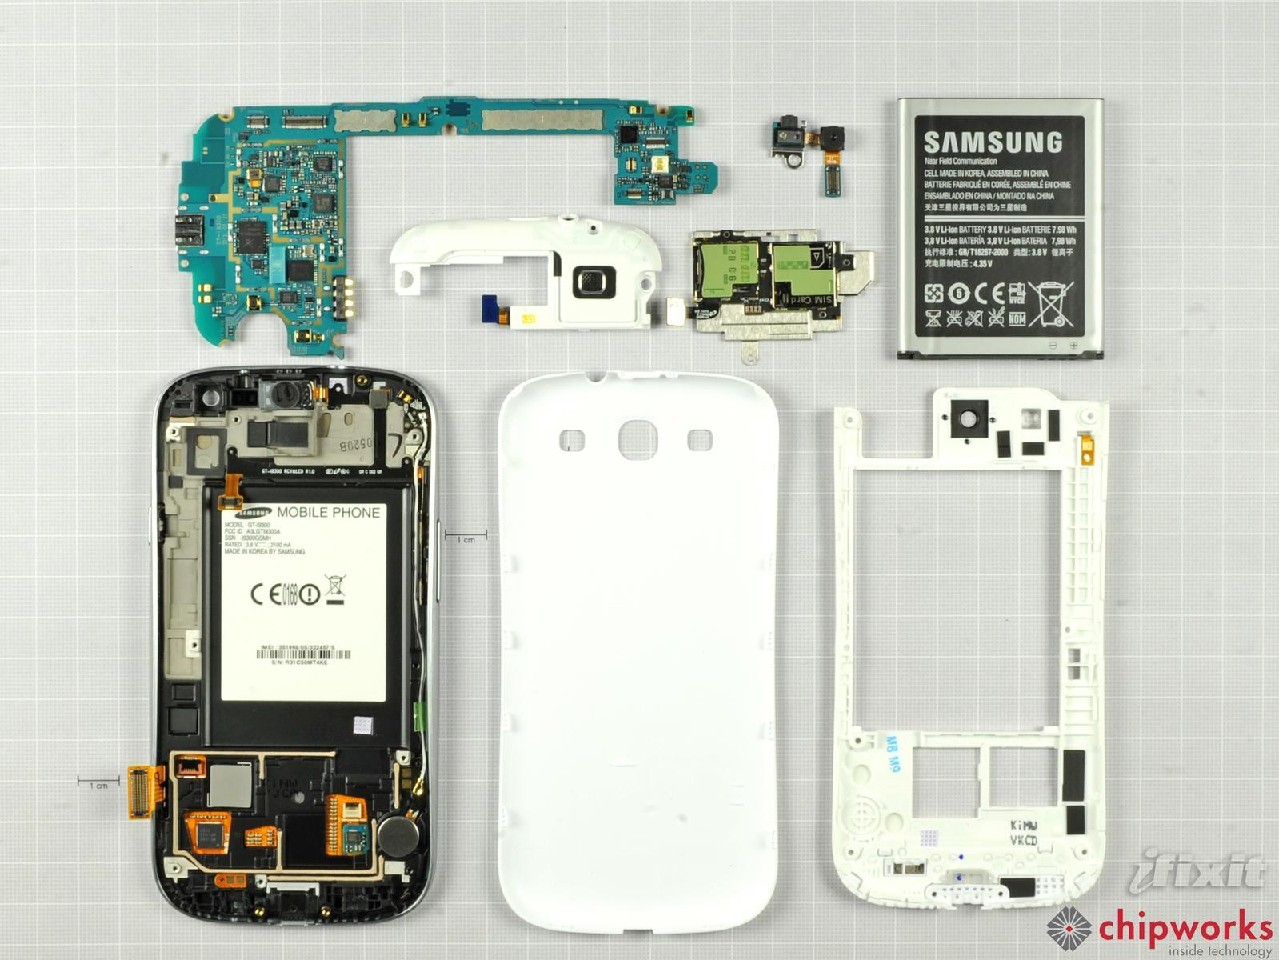 Galaxy S III rozłożony na części, ma ten sam aparat co iPhone 4S